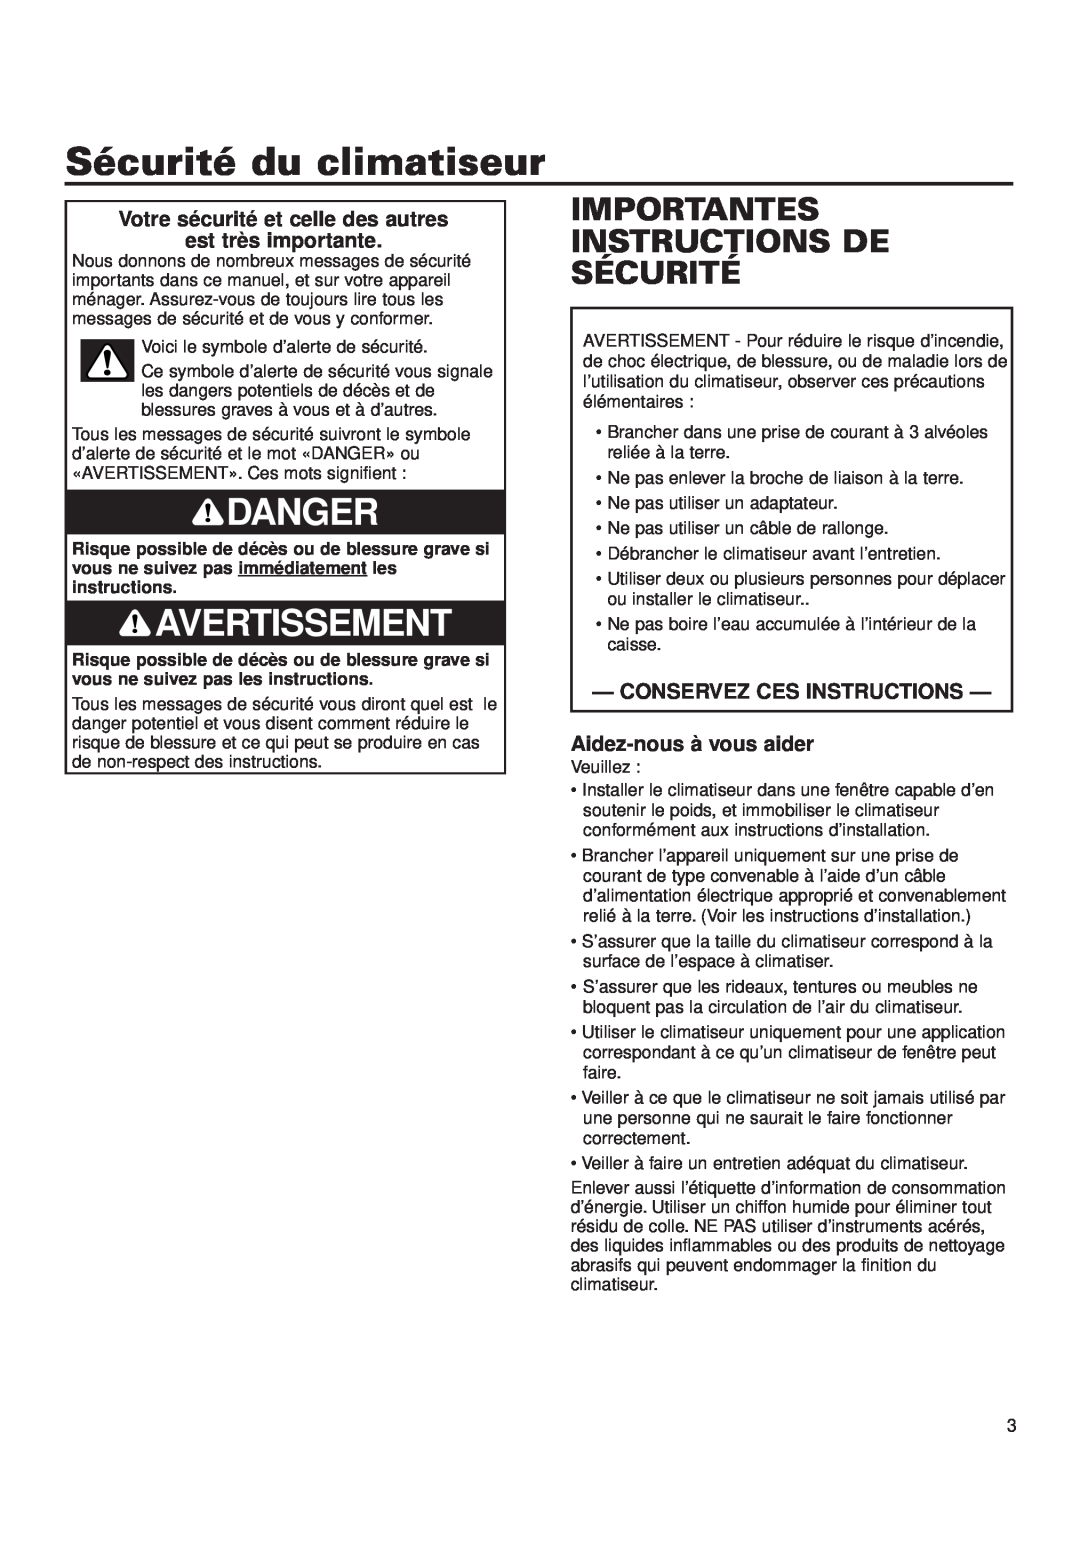 Whirlpool ACQ052PK0 Sécurité du climatiseur, Avertissement, Importantes Instructions De Sécurité, Danger 